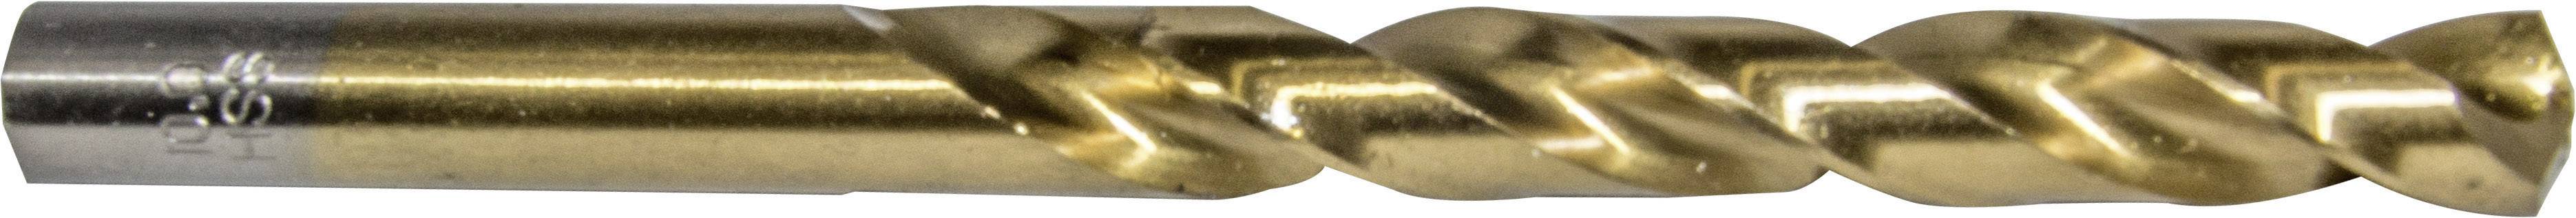 HELLER 29258 0 Metall-Spiralbohrer 1 Stück 3.3 mm Gesamtlänge 65 mm 1 St.